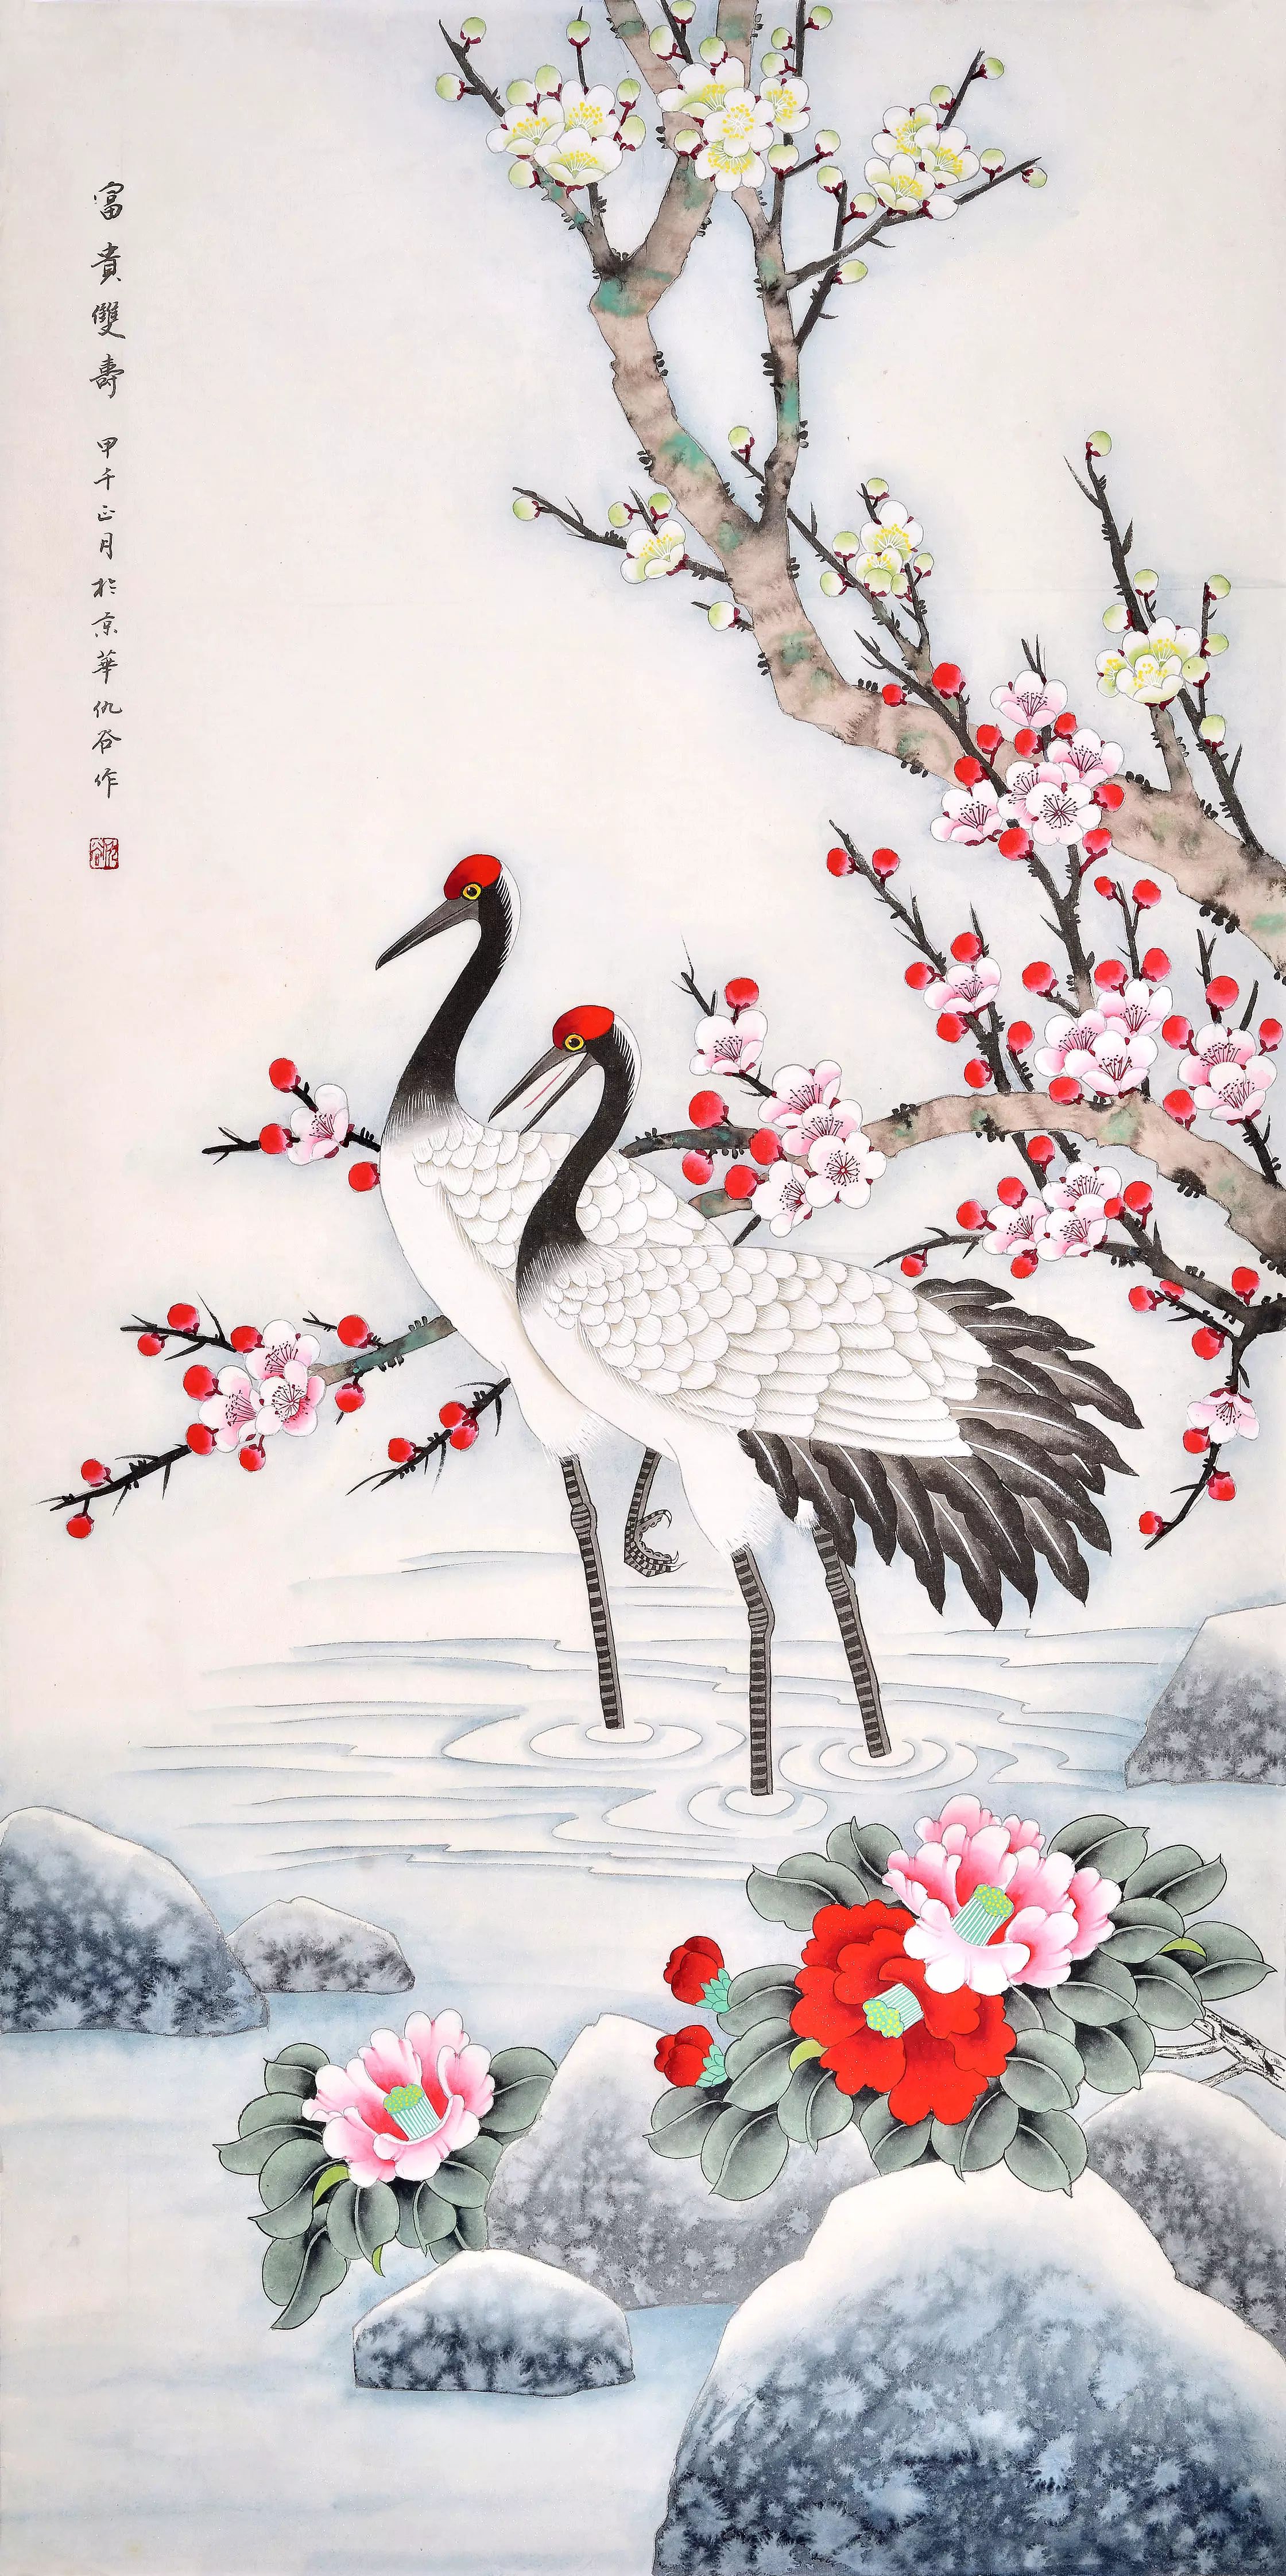 历代名家仙鹤诗画欣赏 感受吉祥鸟带来的美好